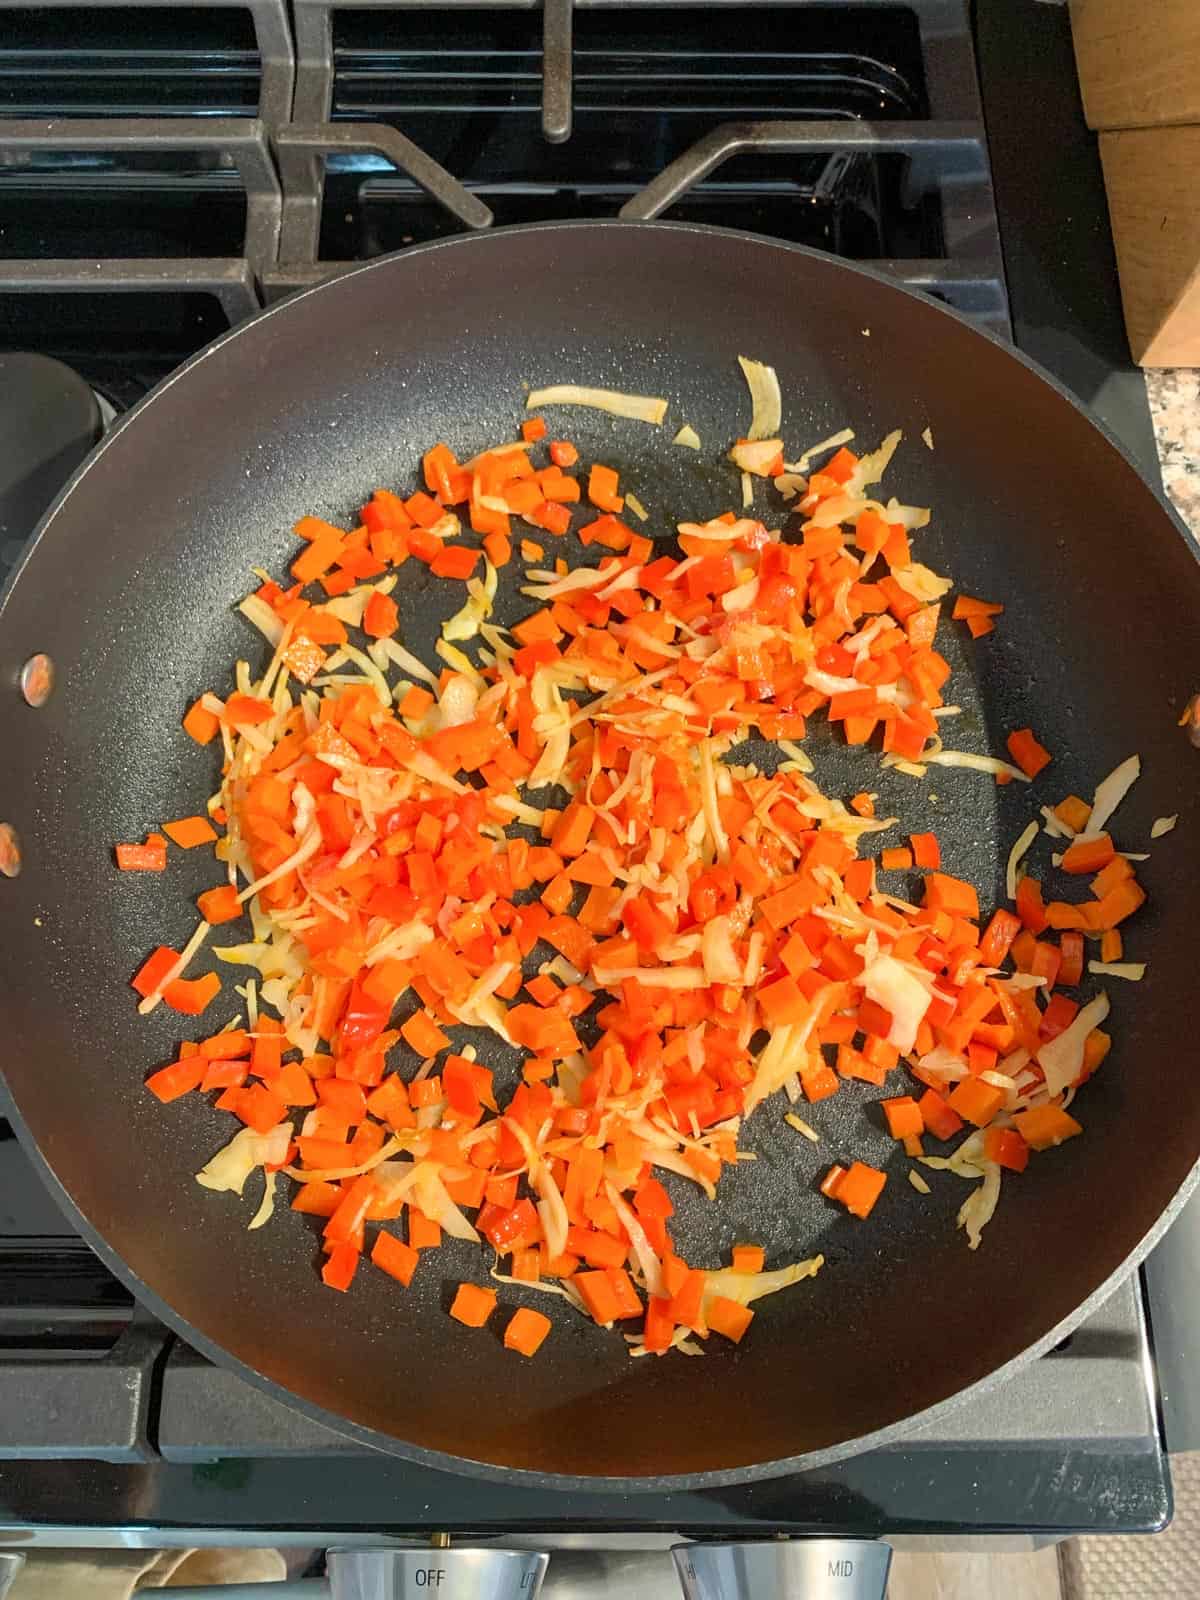 Sautéed vegetables in a skillet.